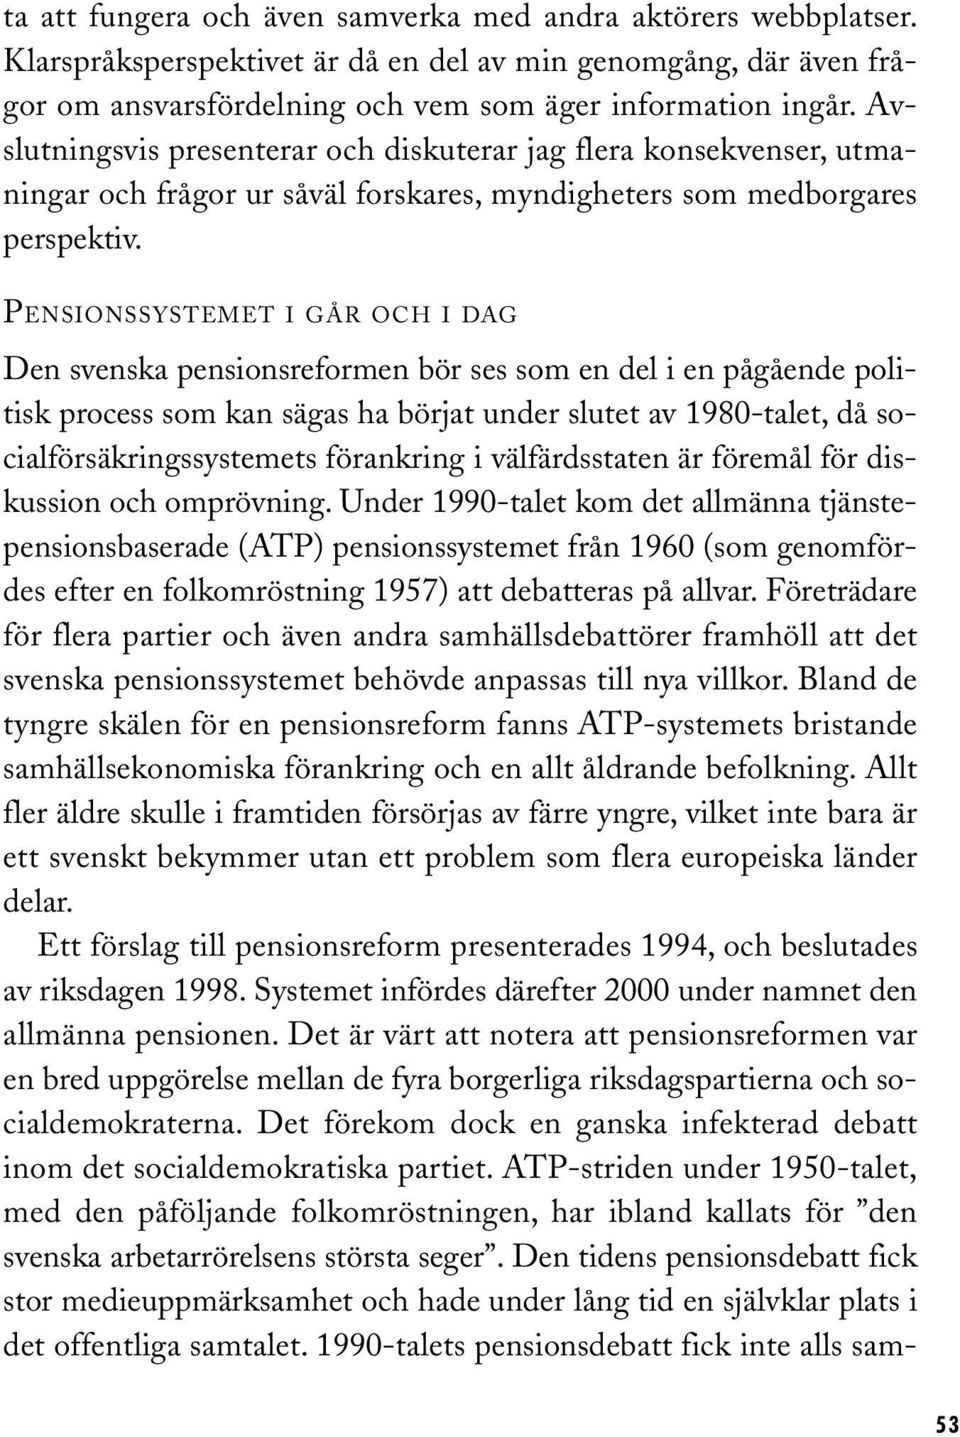 PENSIONSSYSTEMET I GÅR OCH I DAG Den svenska pensionsreformen bör ses som en del i en pågående politisk process som kan sägas ha börjat under slutet av 1980-talet, då socialförsäkringssystemets